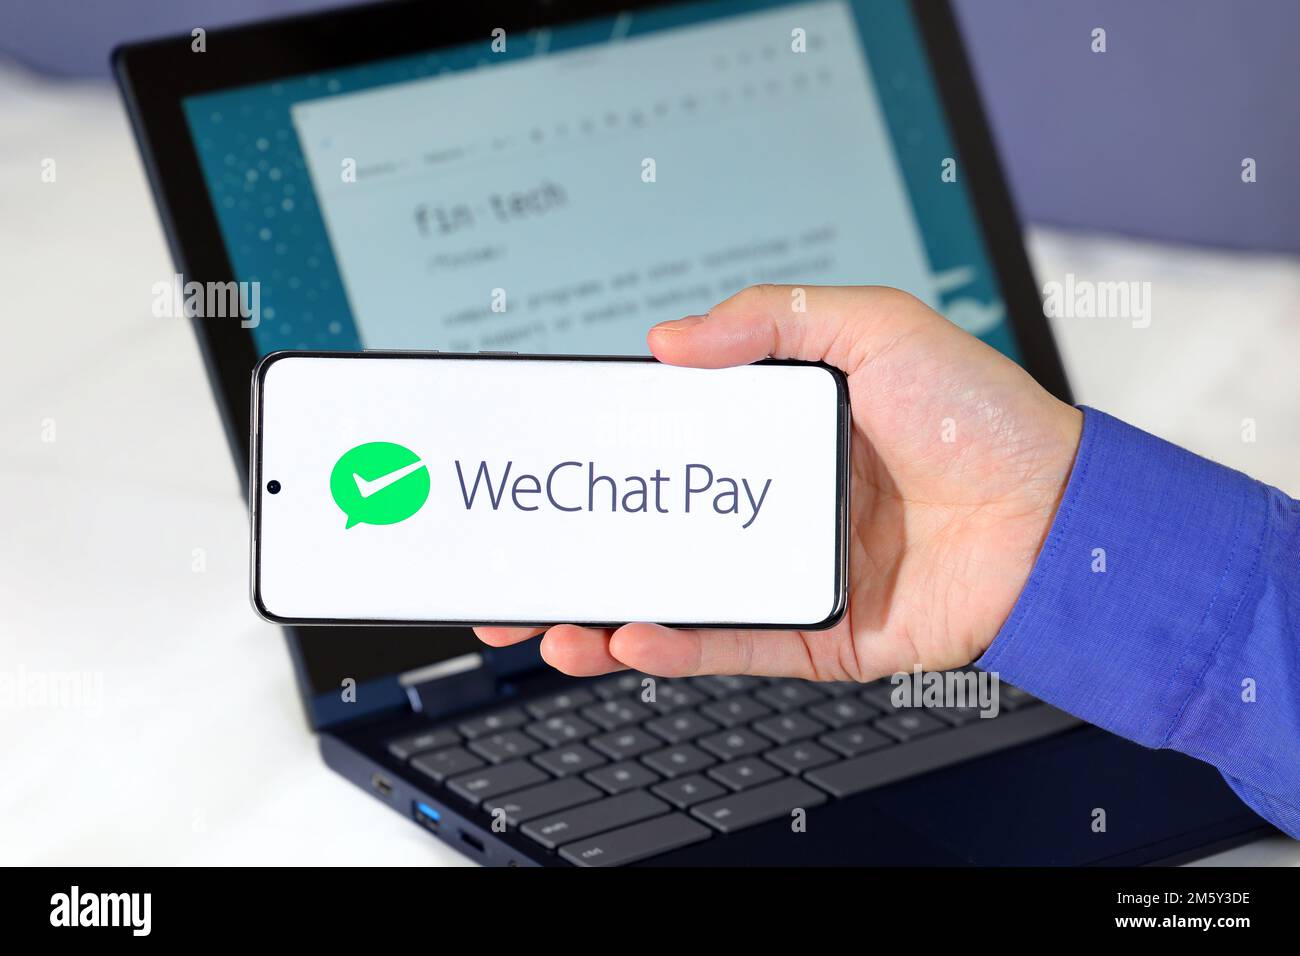 Logo de WeChat Pay sur un smartphone devant un ordinateur. WeChat Pay 微信支付 est un portefeuille mobile, service de paiement numérique basé en Chine. Banque D'Images